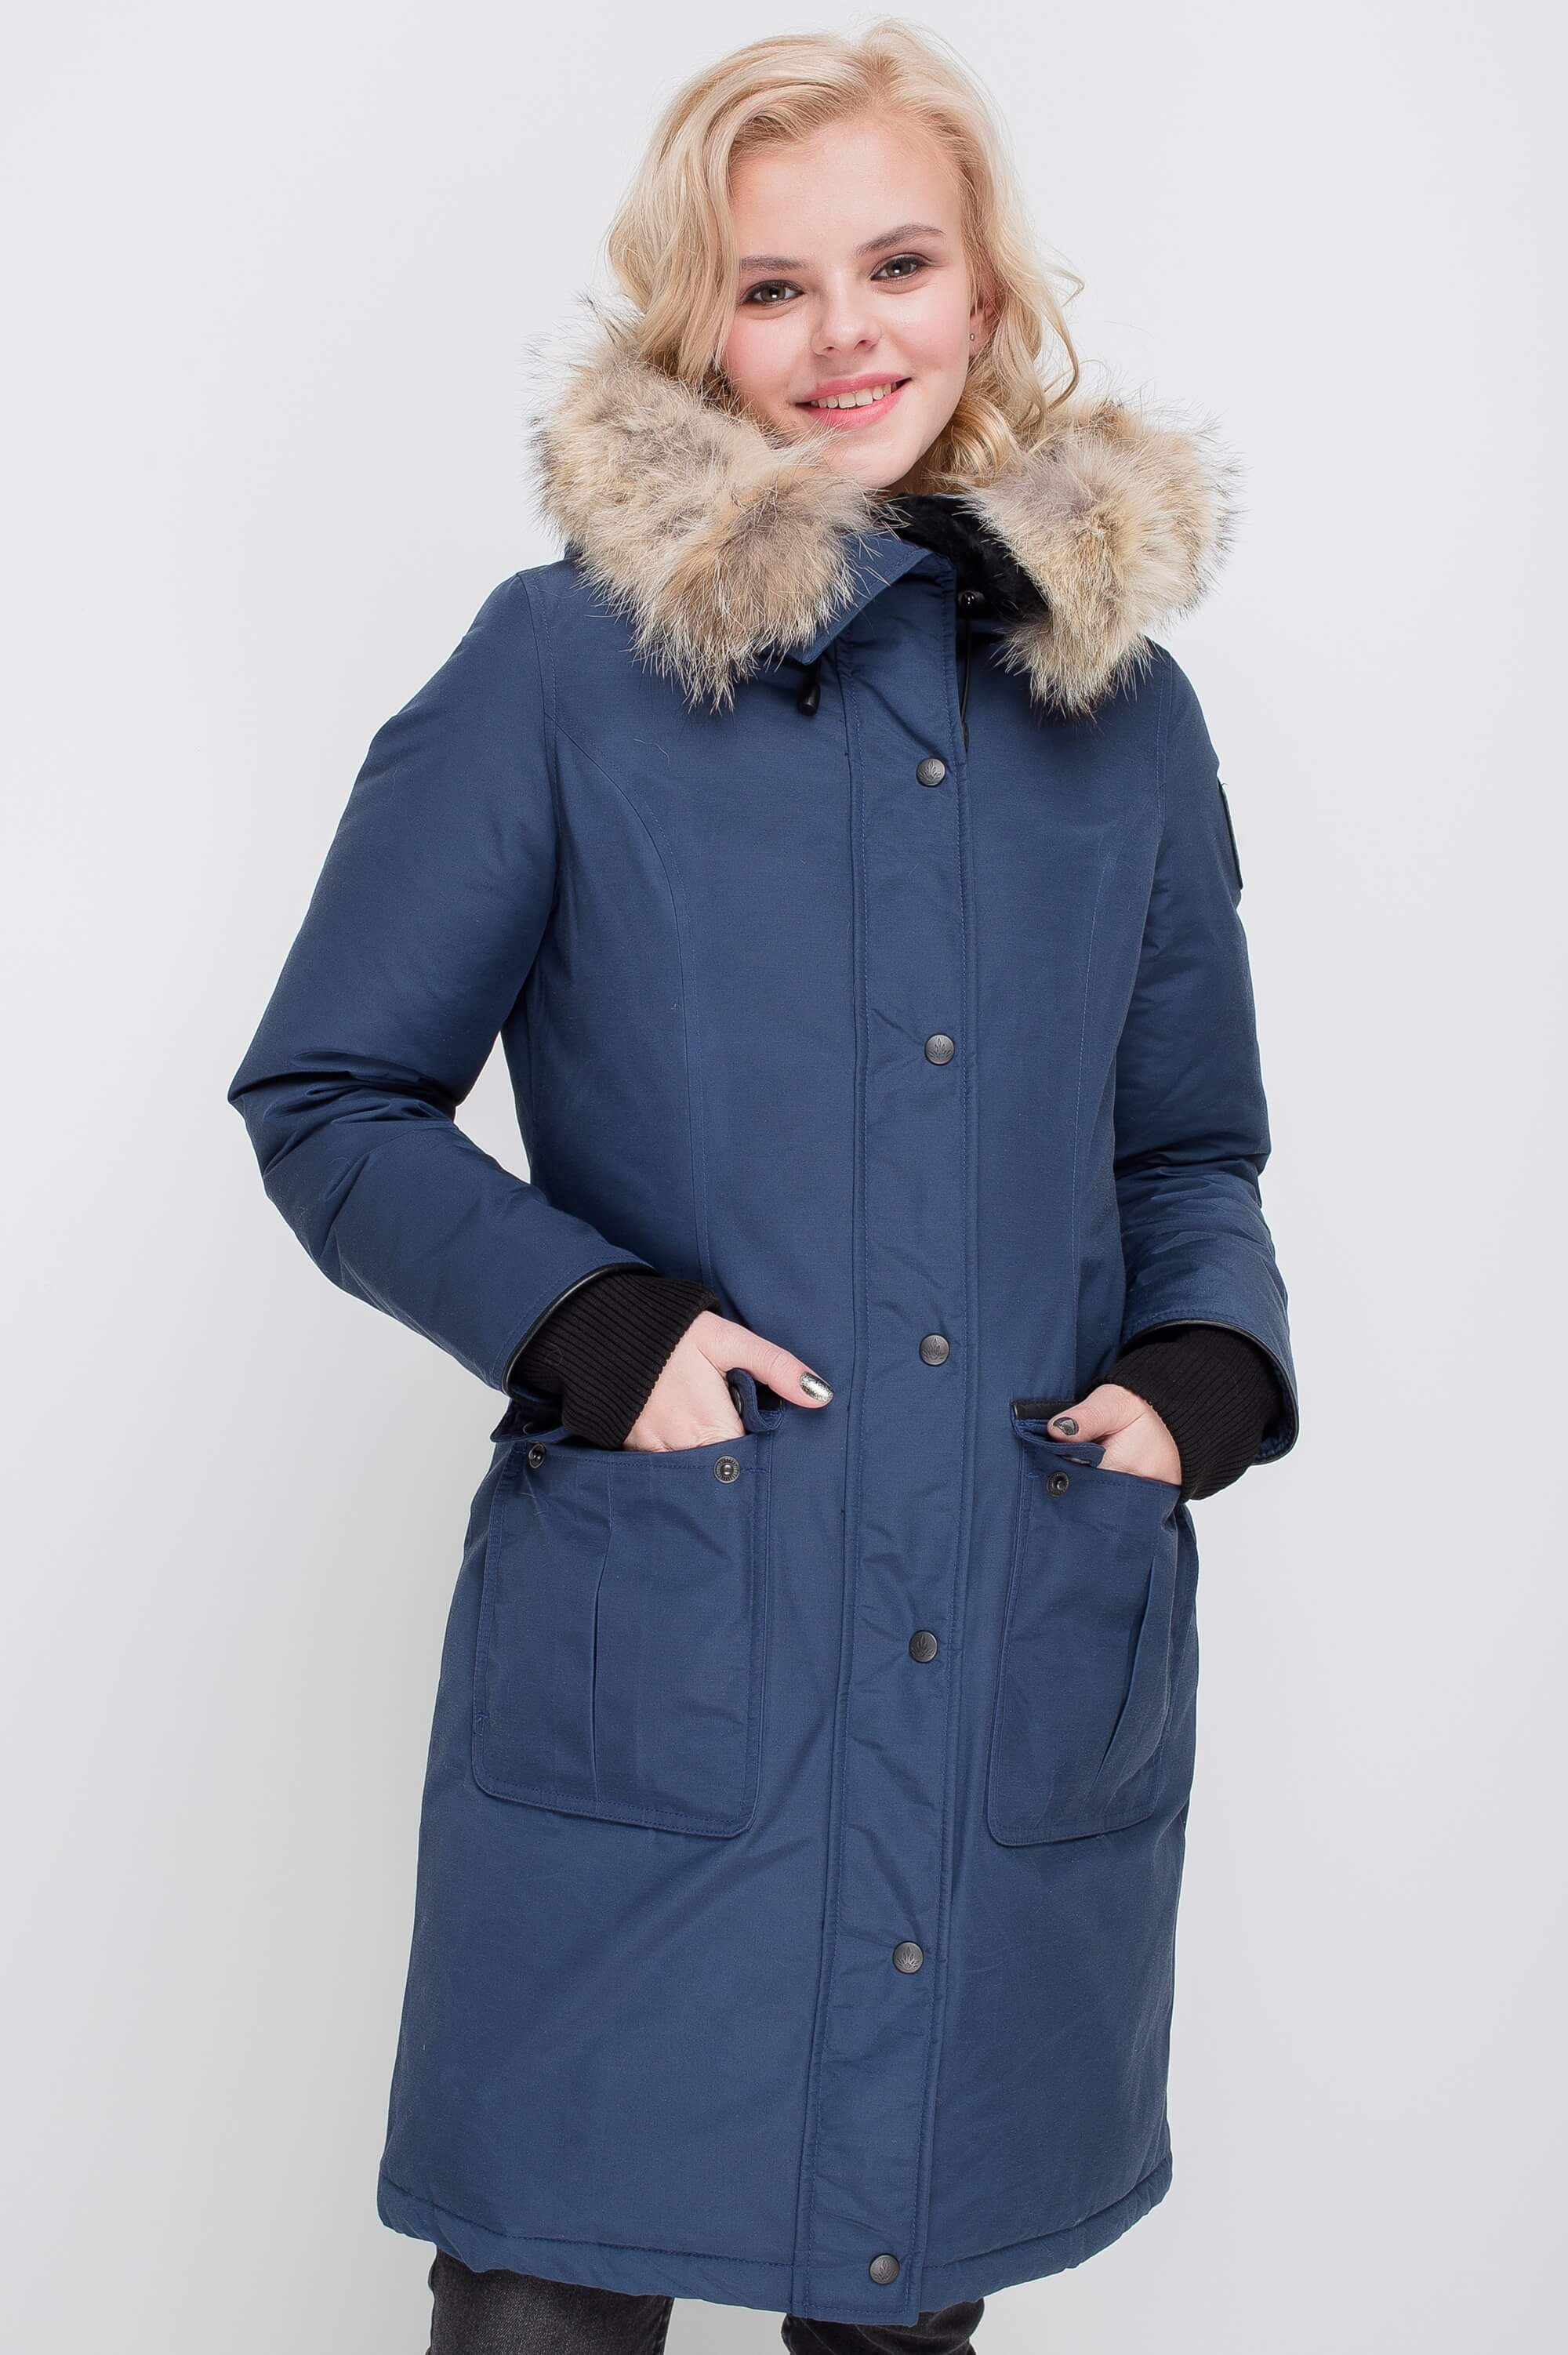 Women's Winter Jacket - Mirabella Parka | Parka Jacket for Women ...